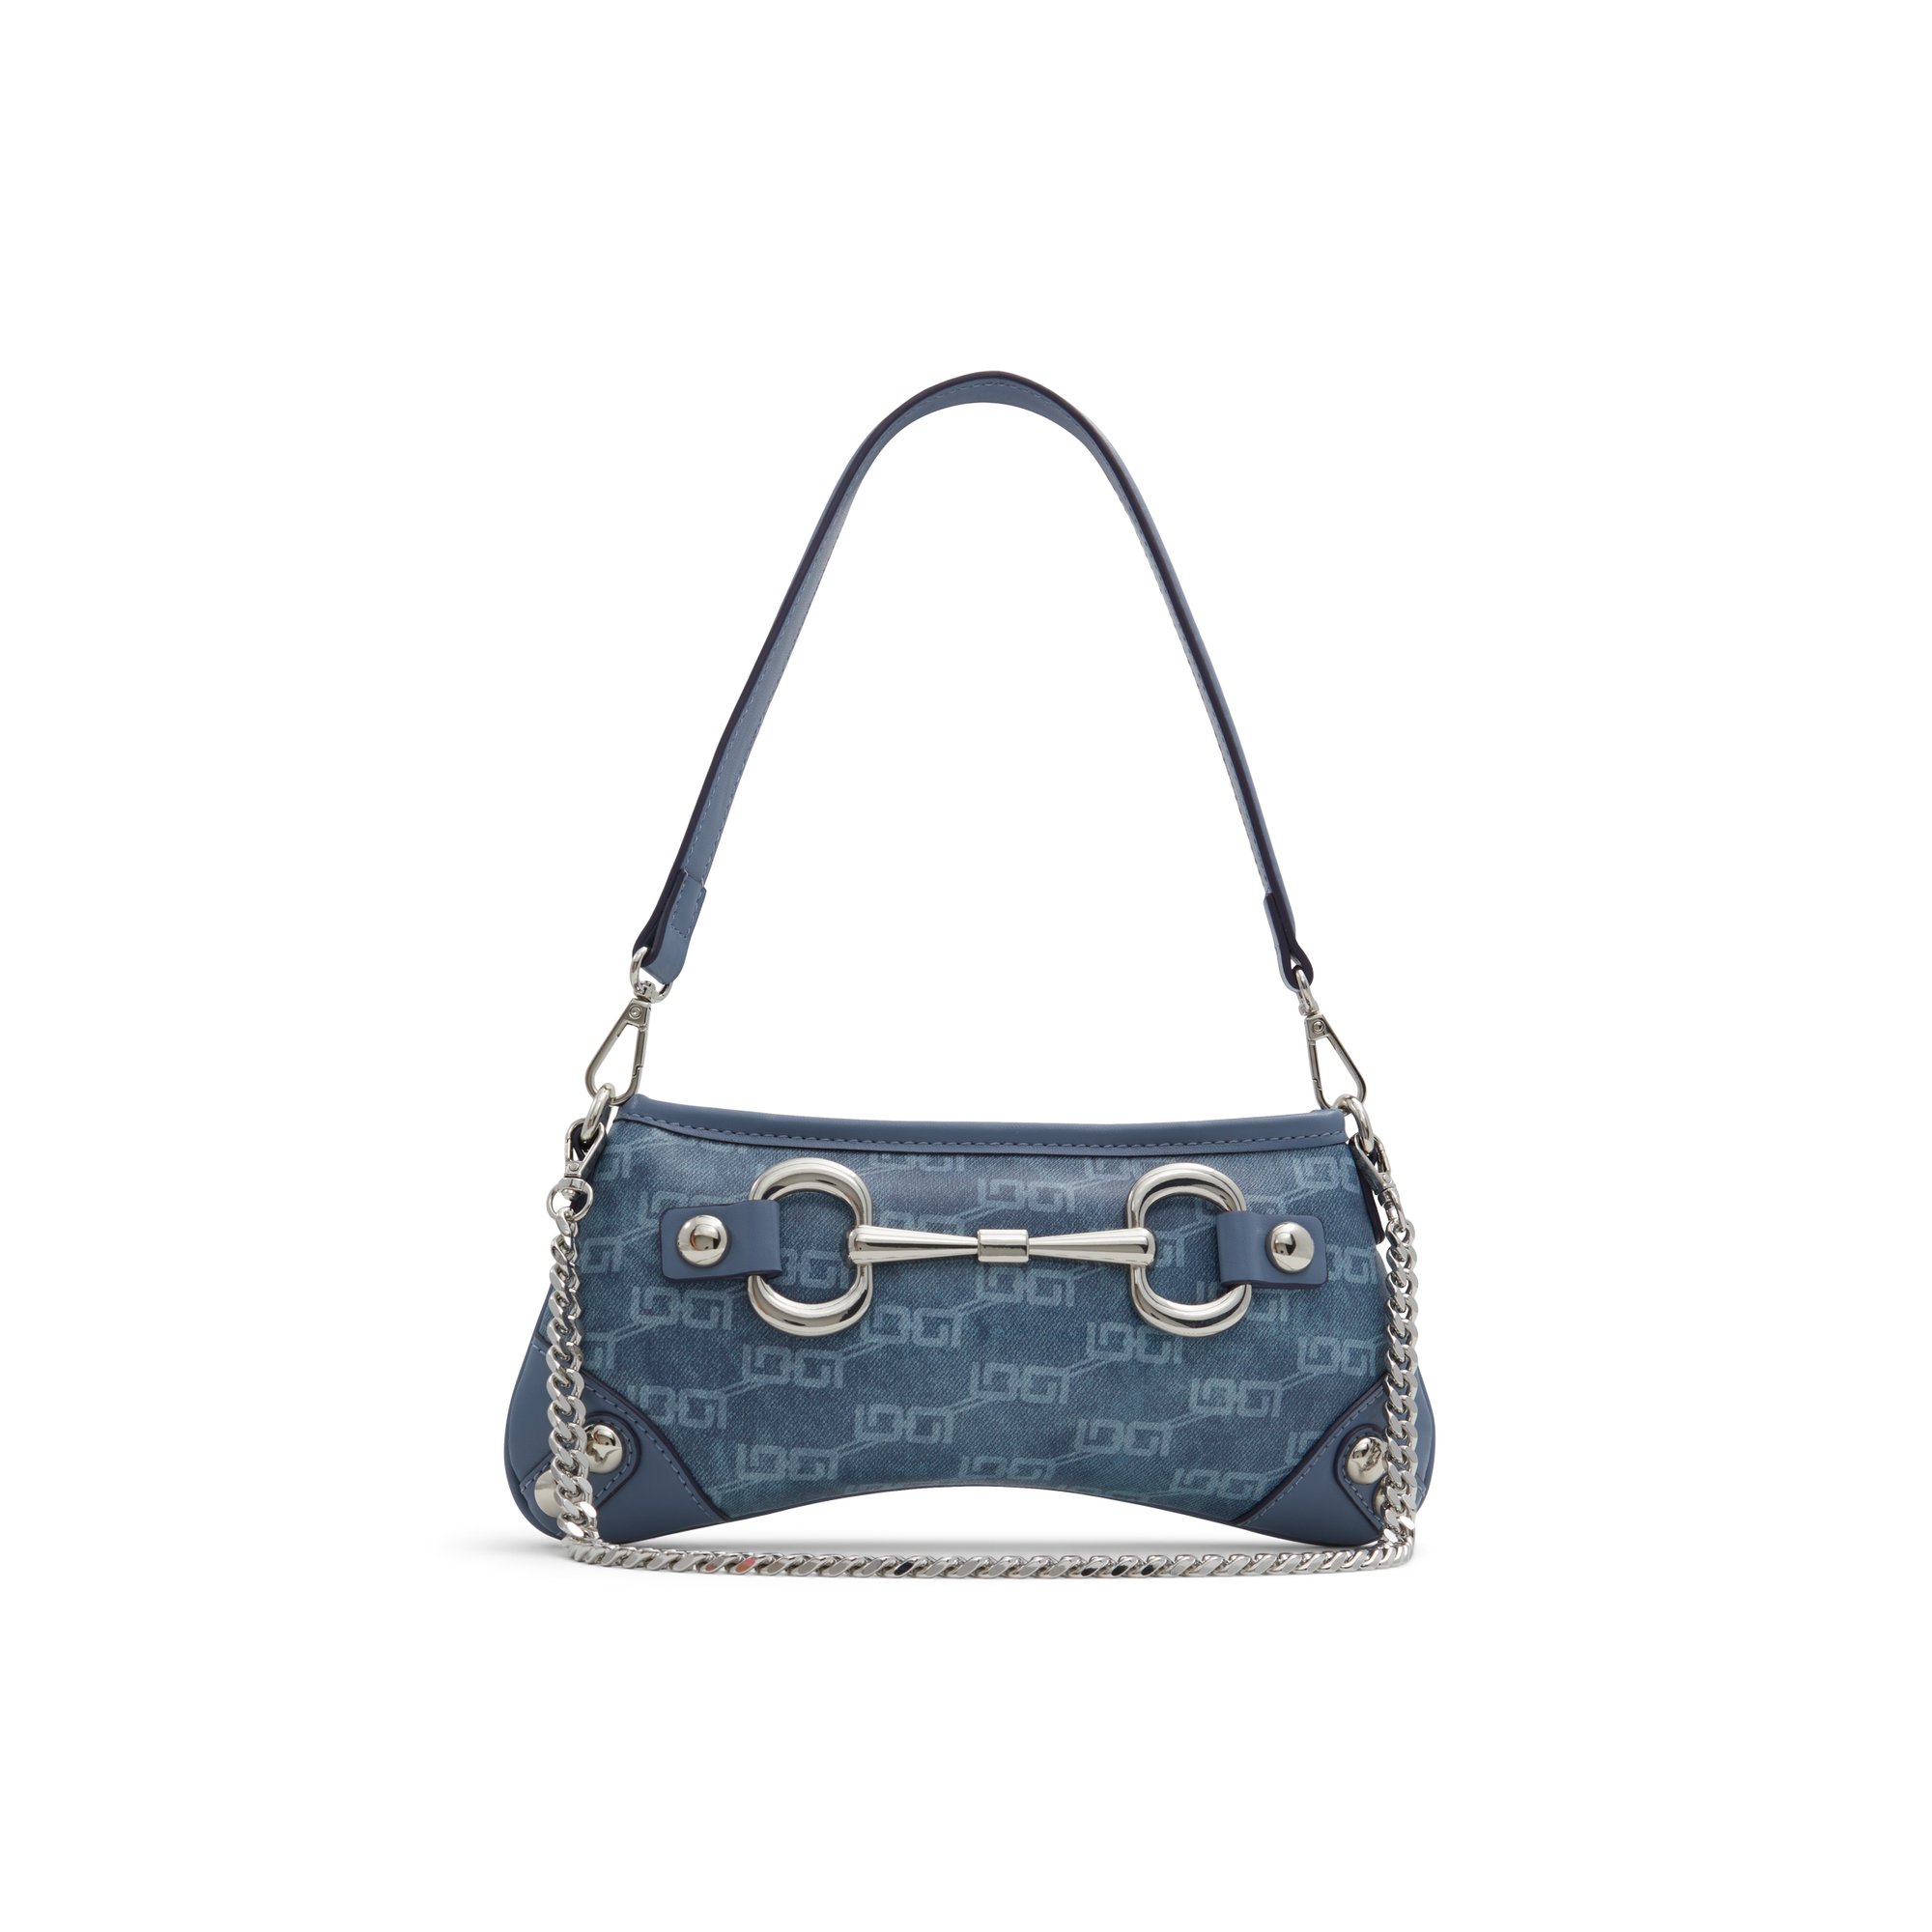 ALDO Madyx - Women's Shoulder Bag Handbag - Blue